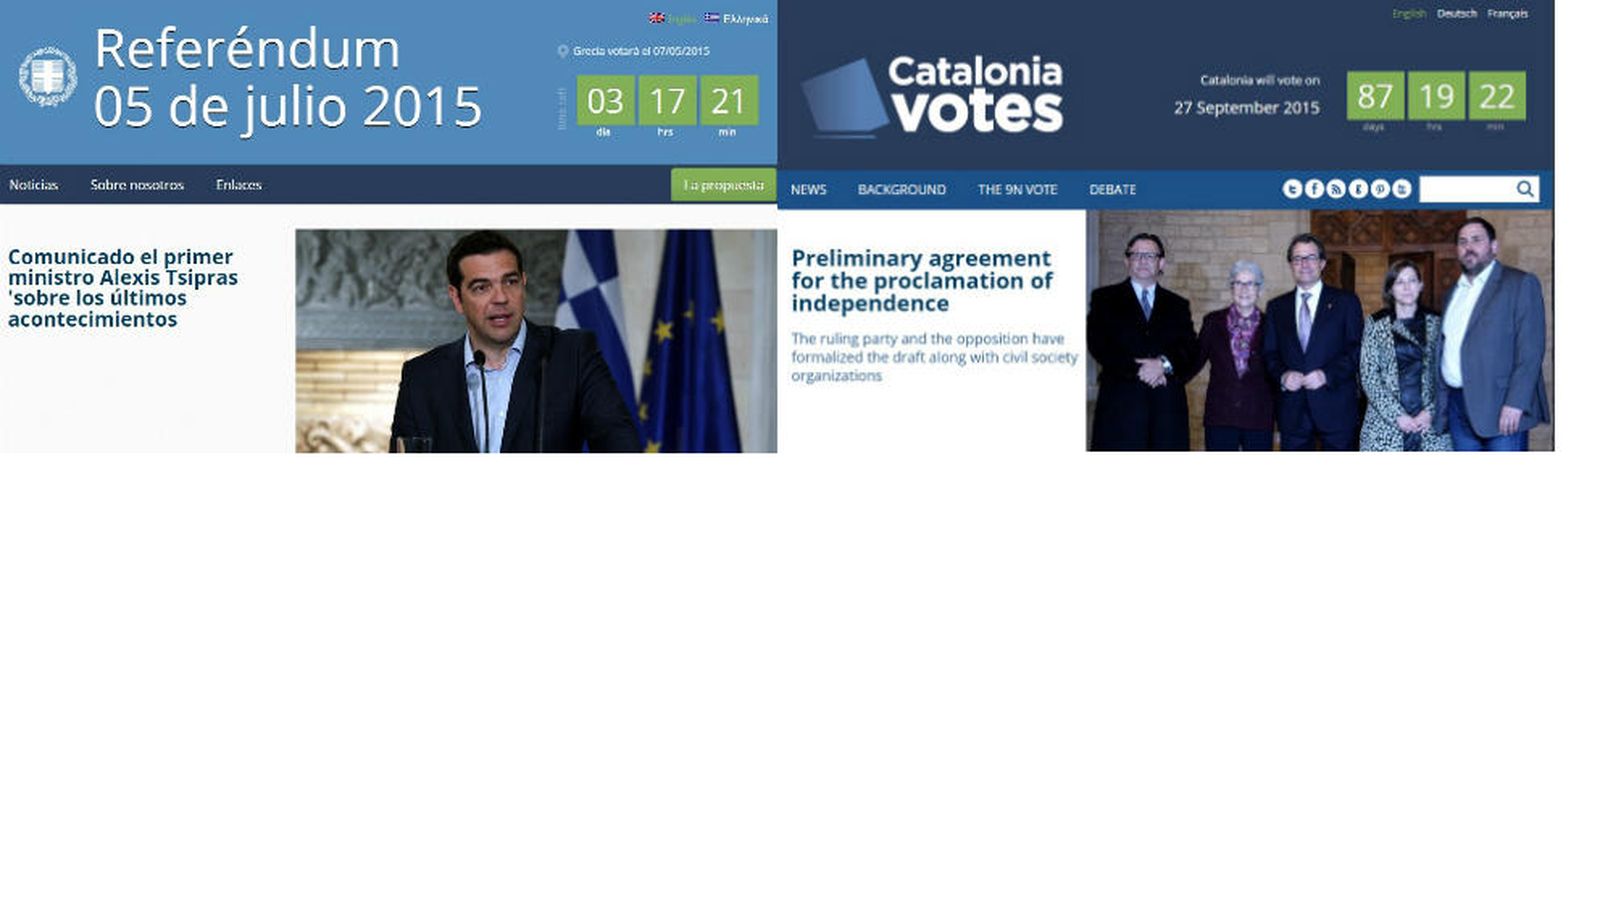 Foto: A la izquierda, imagen del referéndum en Grecia. A la derecha, la de la consulta catalana